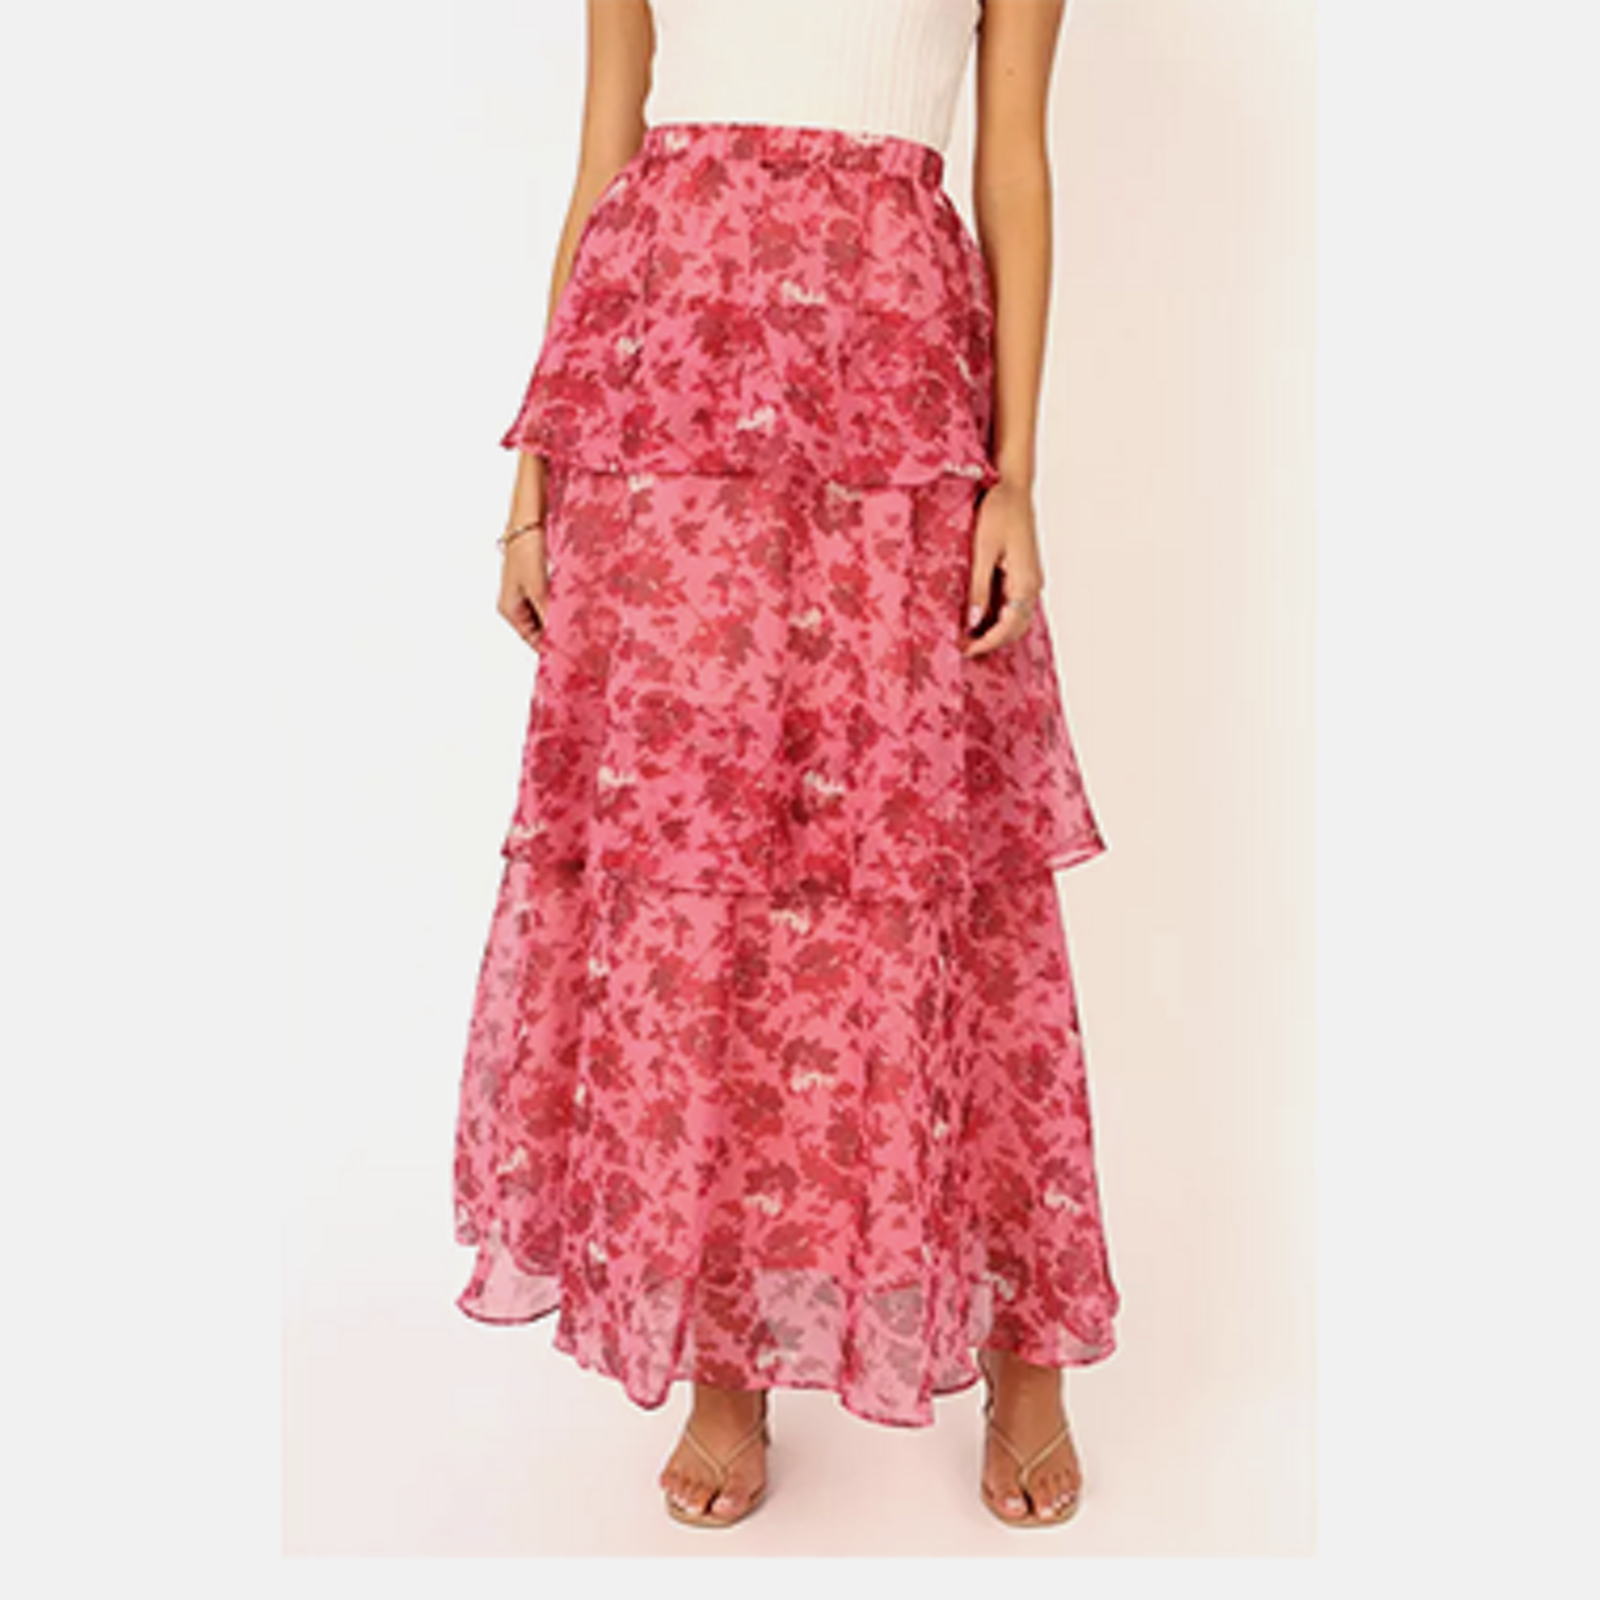 Skirts for Women - Macy's - Macy's